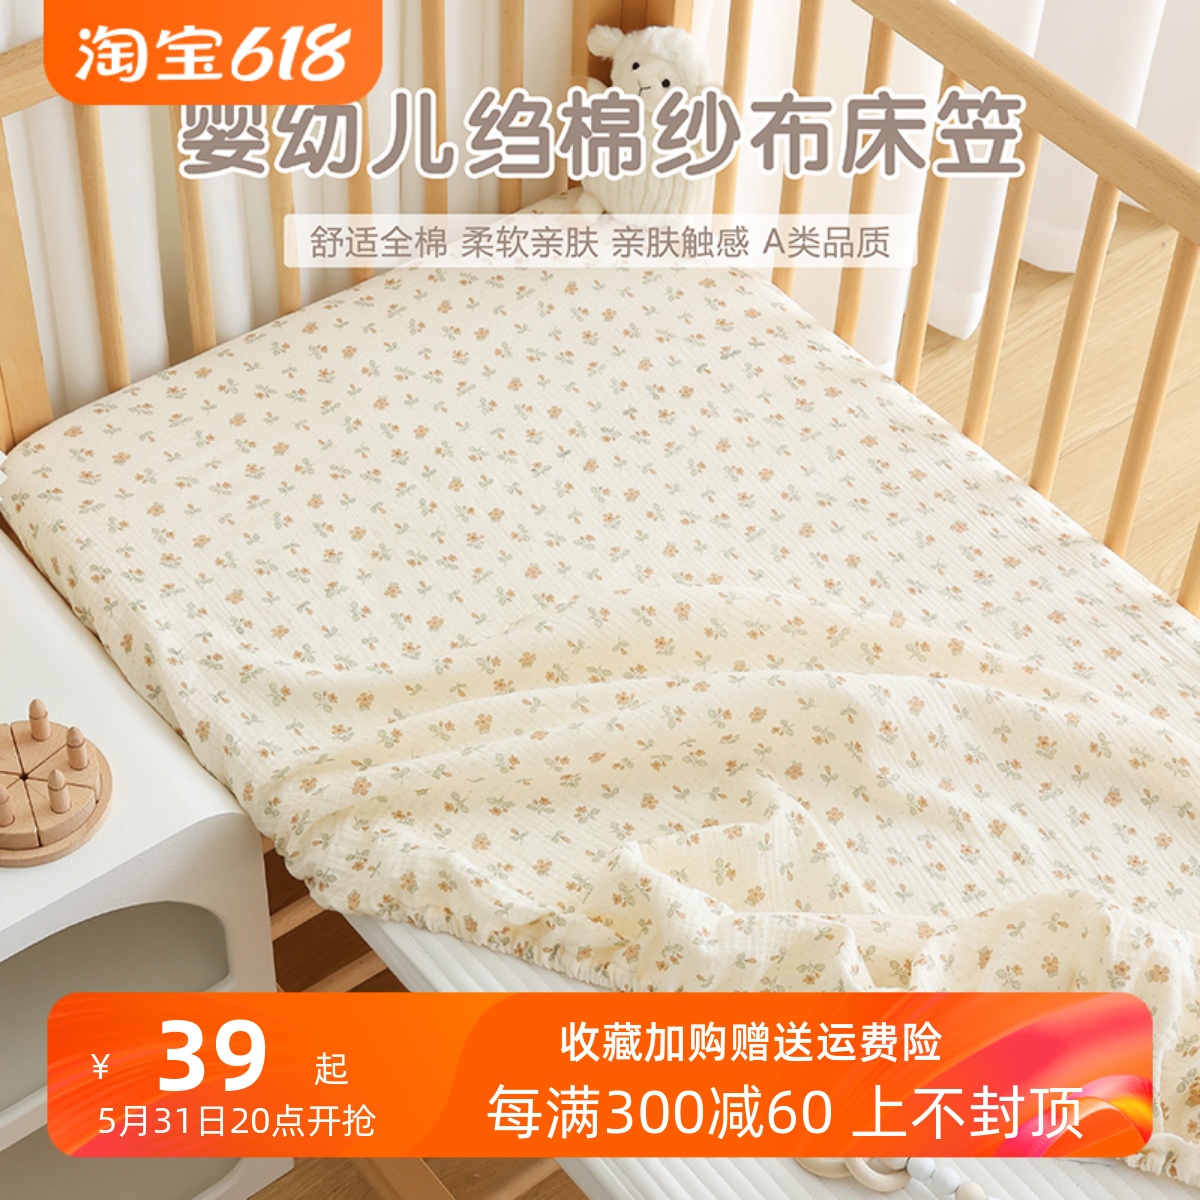 婴儿床床笠纯棉a类新生儿床上用品宝宝床单幼儿园儿童拼接床垫套